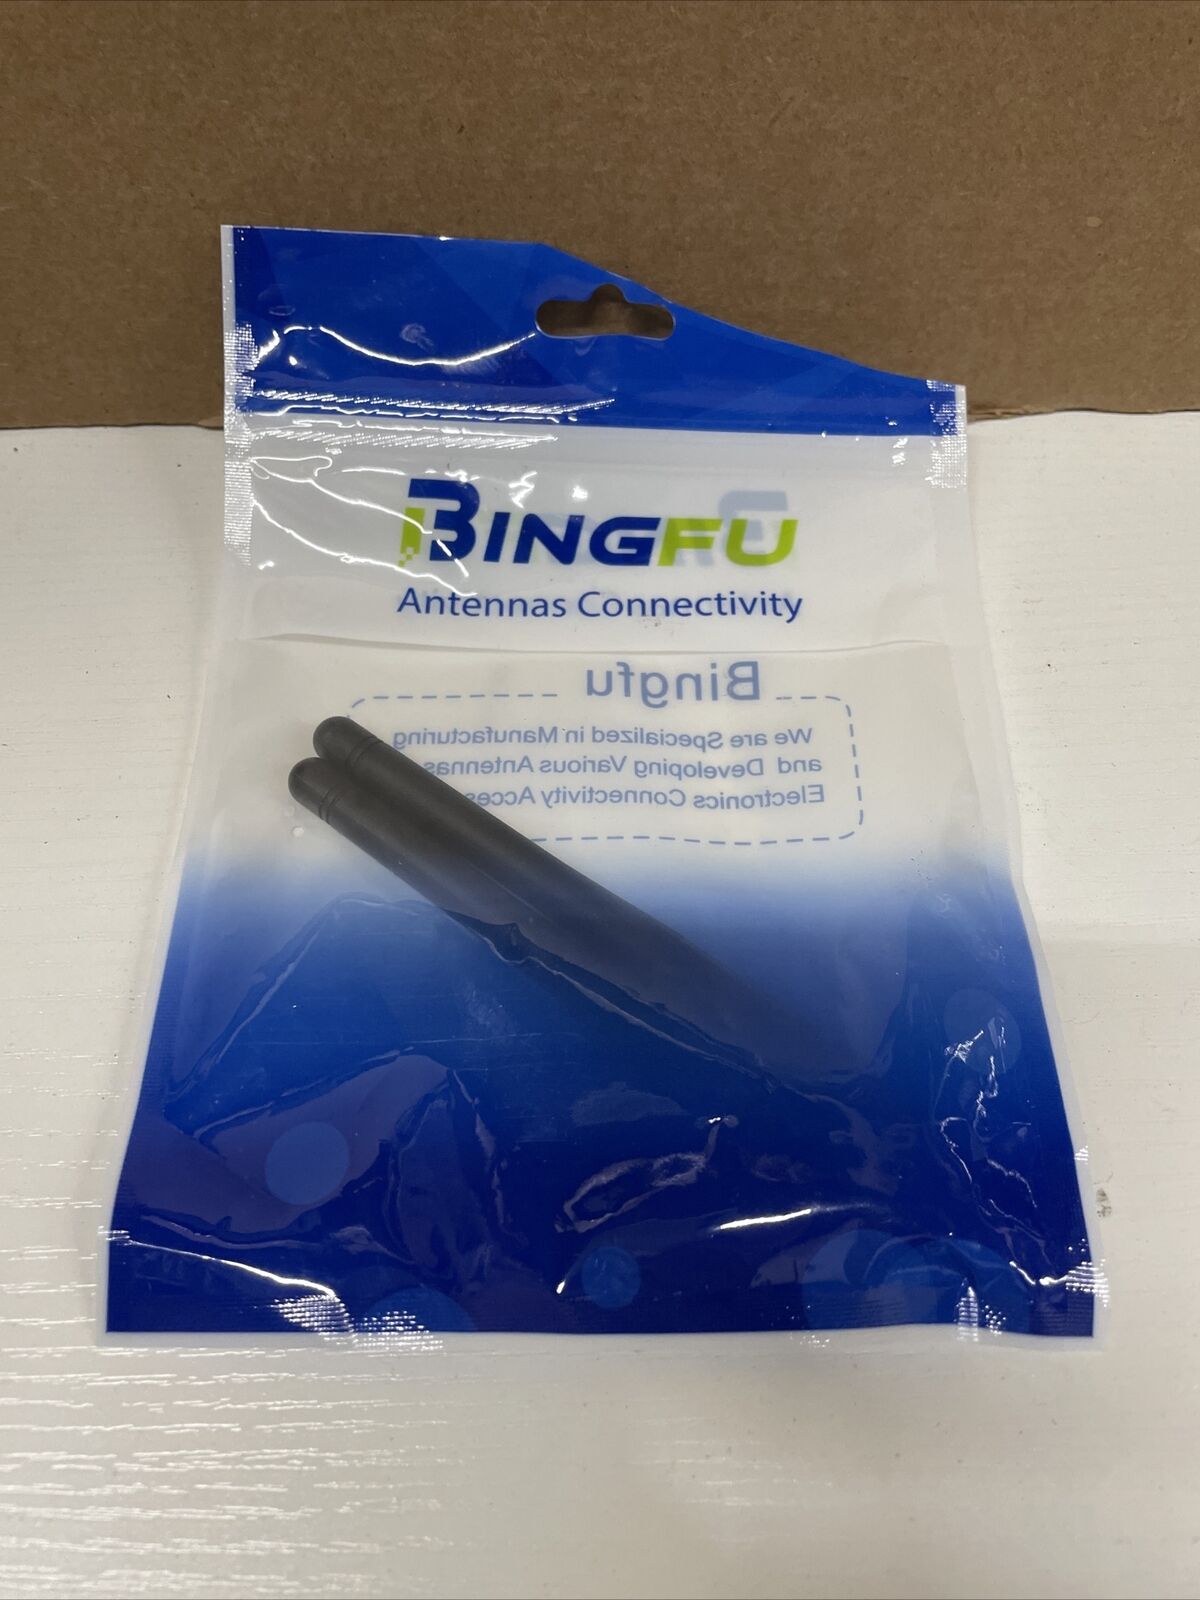 Bingfu Dual Band WiFi 2.4GHz 5GHz 5.8GHz 6dBi SMA Male Antenna (2-Pack) for W...